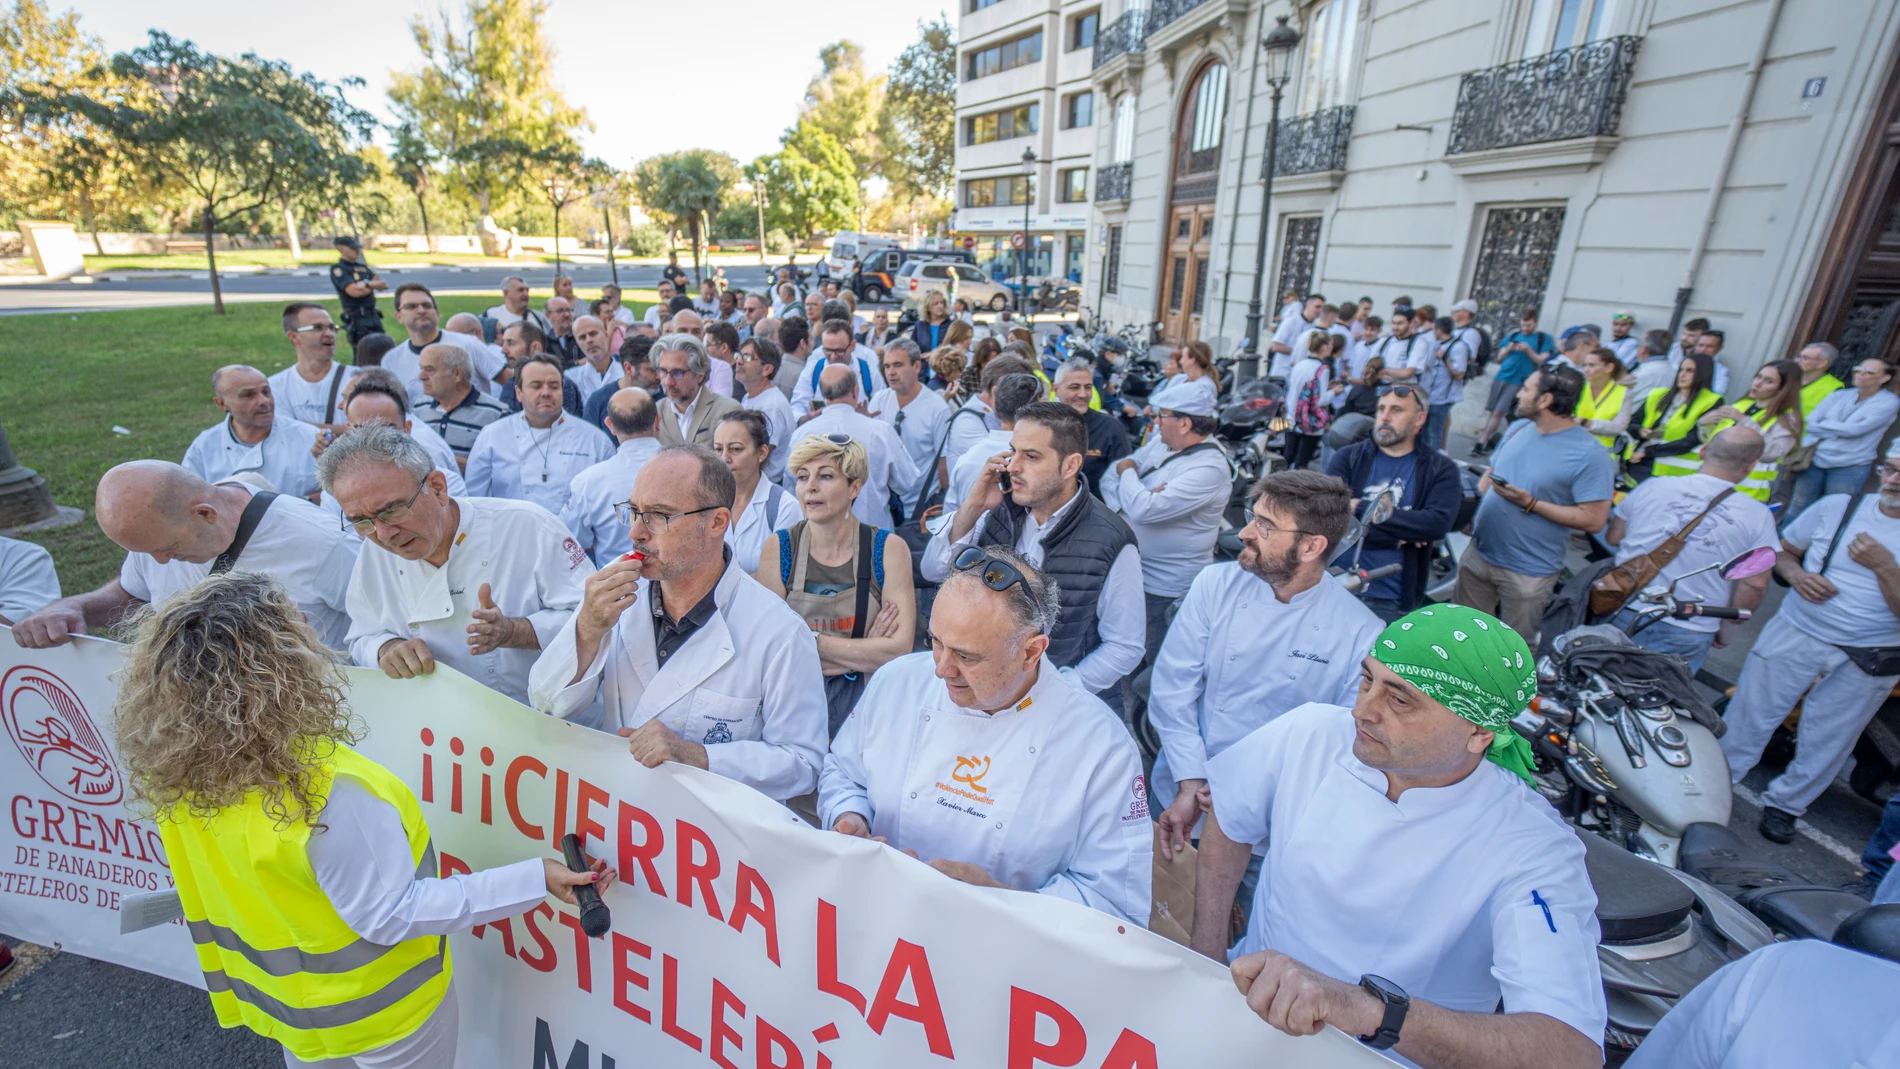 Un grupo de personas pertenecientes al gremio de panaderos se manifiesta frente a la Delegación del Gobierno de València